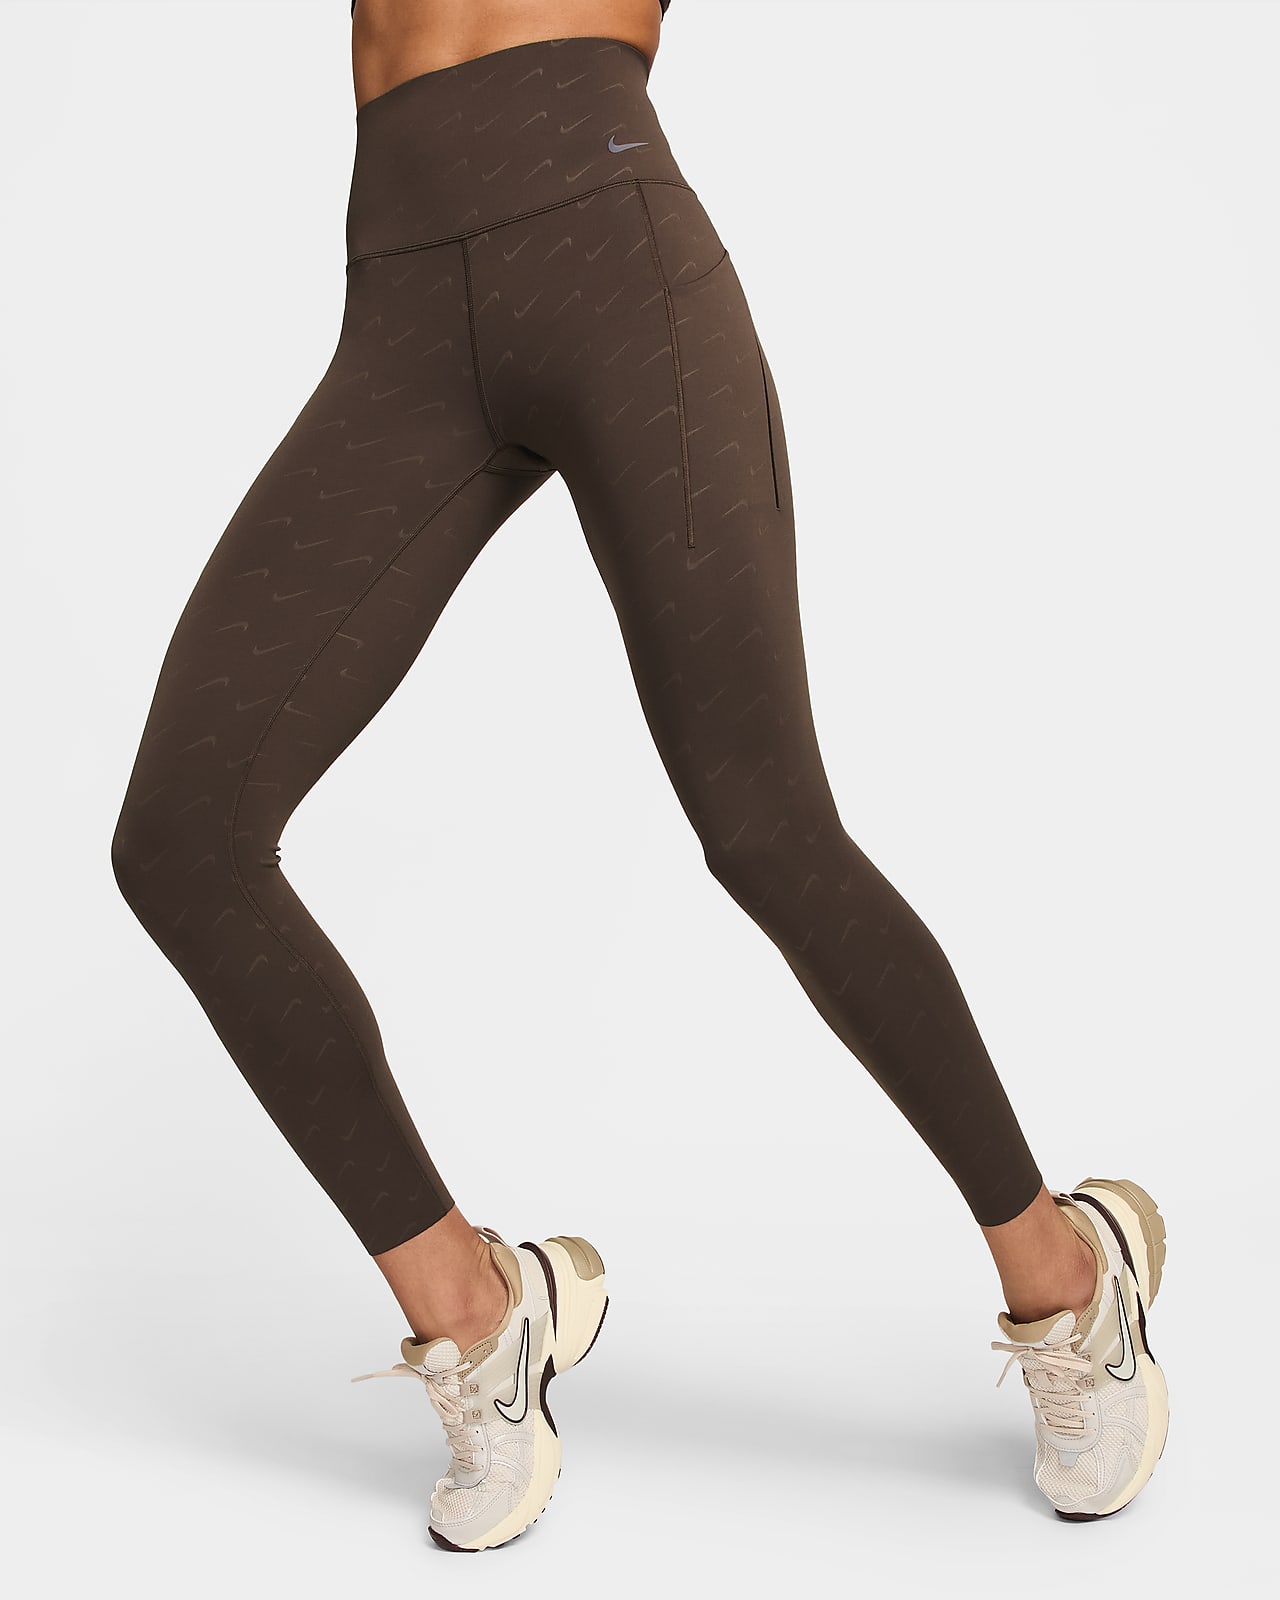 Legging court taille haute à maintien normal avec poches Nike Universa pour  femme